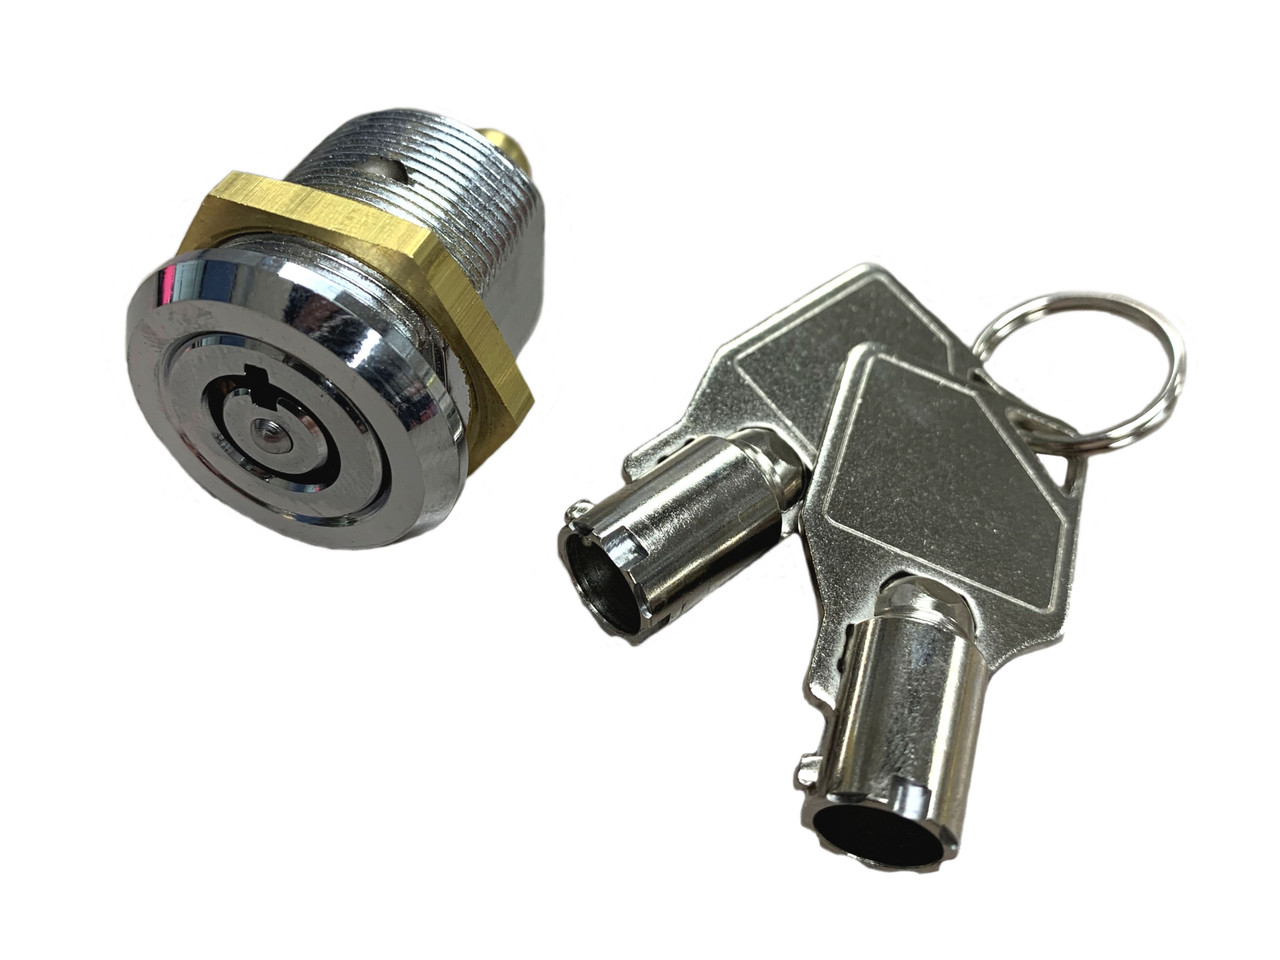 Contico Replacement Locks - Mr Lock, Inc.